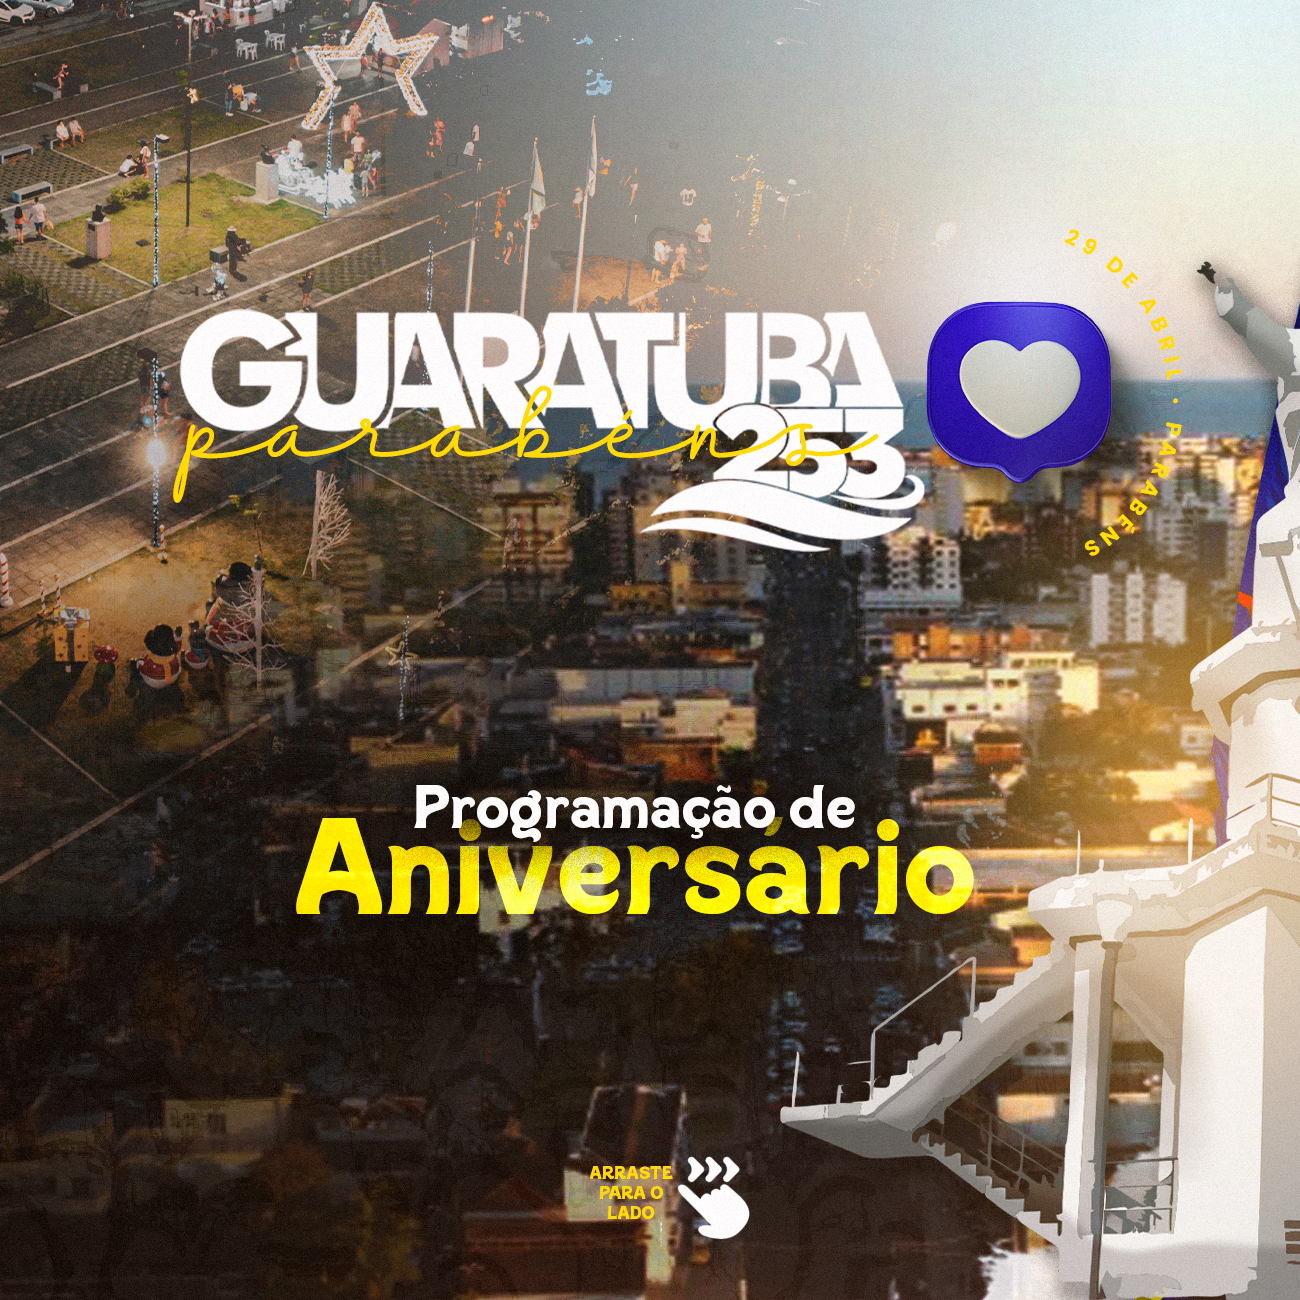 253 anos de Guaratuba! Preparamos uma programação especial para comemorar este marco na história da nossa cidade